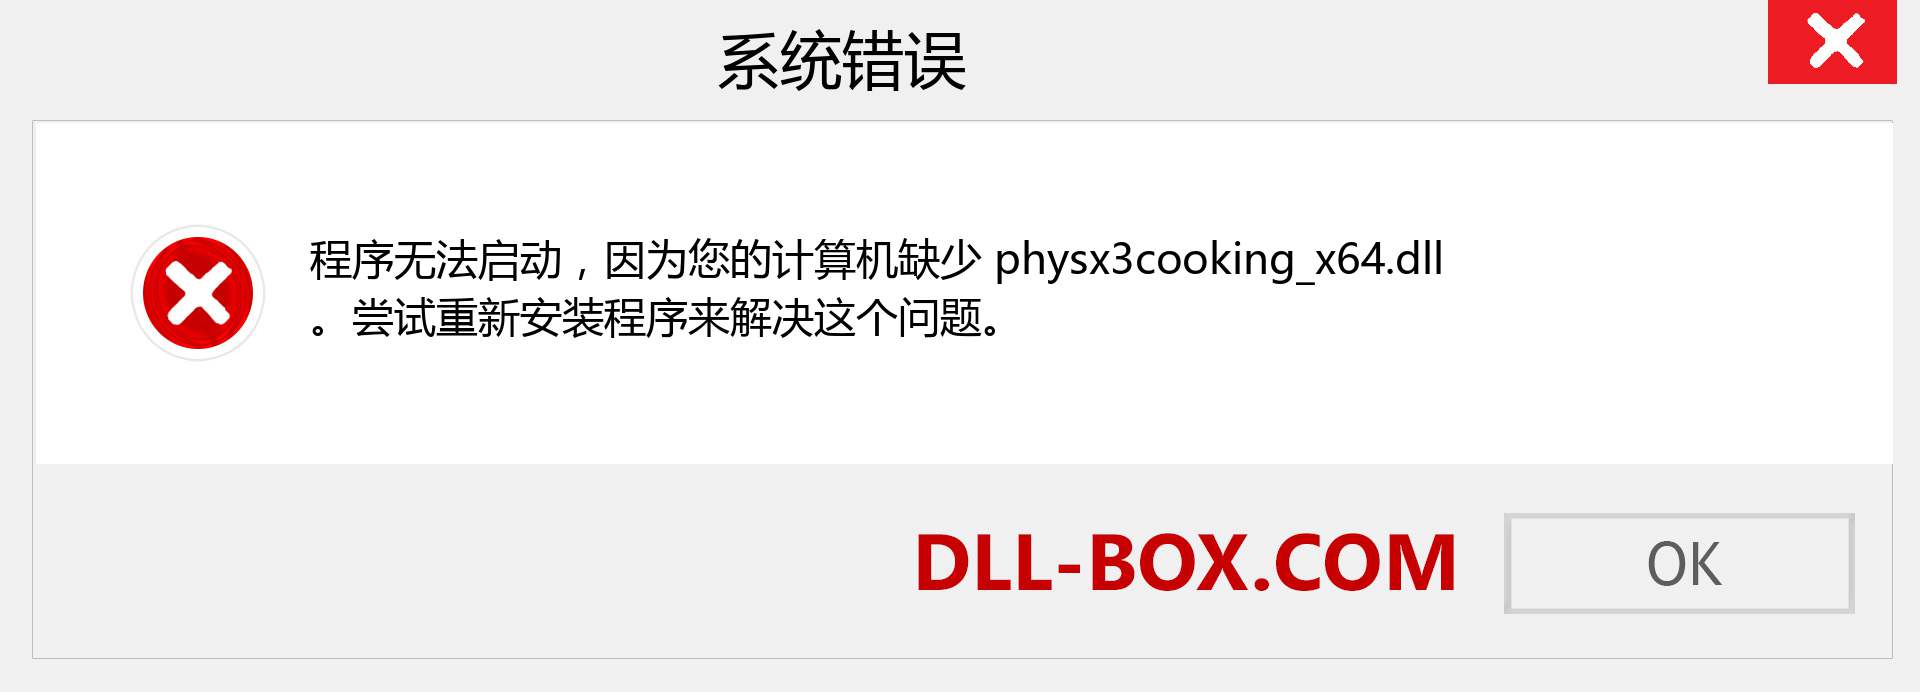 physx3cooking_x64.dll 文件丢失？。 适用于 Windows 7、8、10 的下载 - 修复 Windows、照片、图像上的 physx3cooking_x64 dll 丢失错误